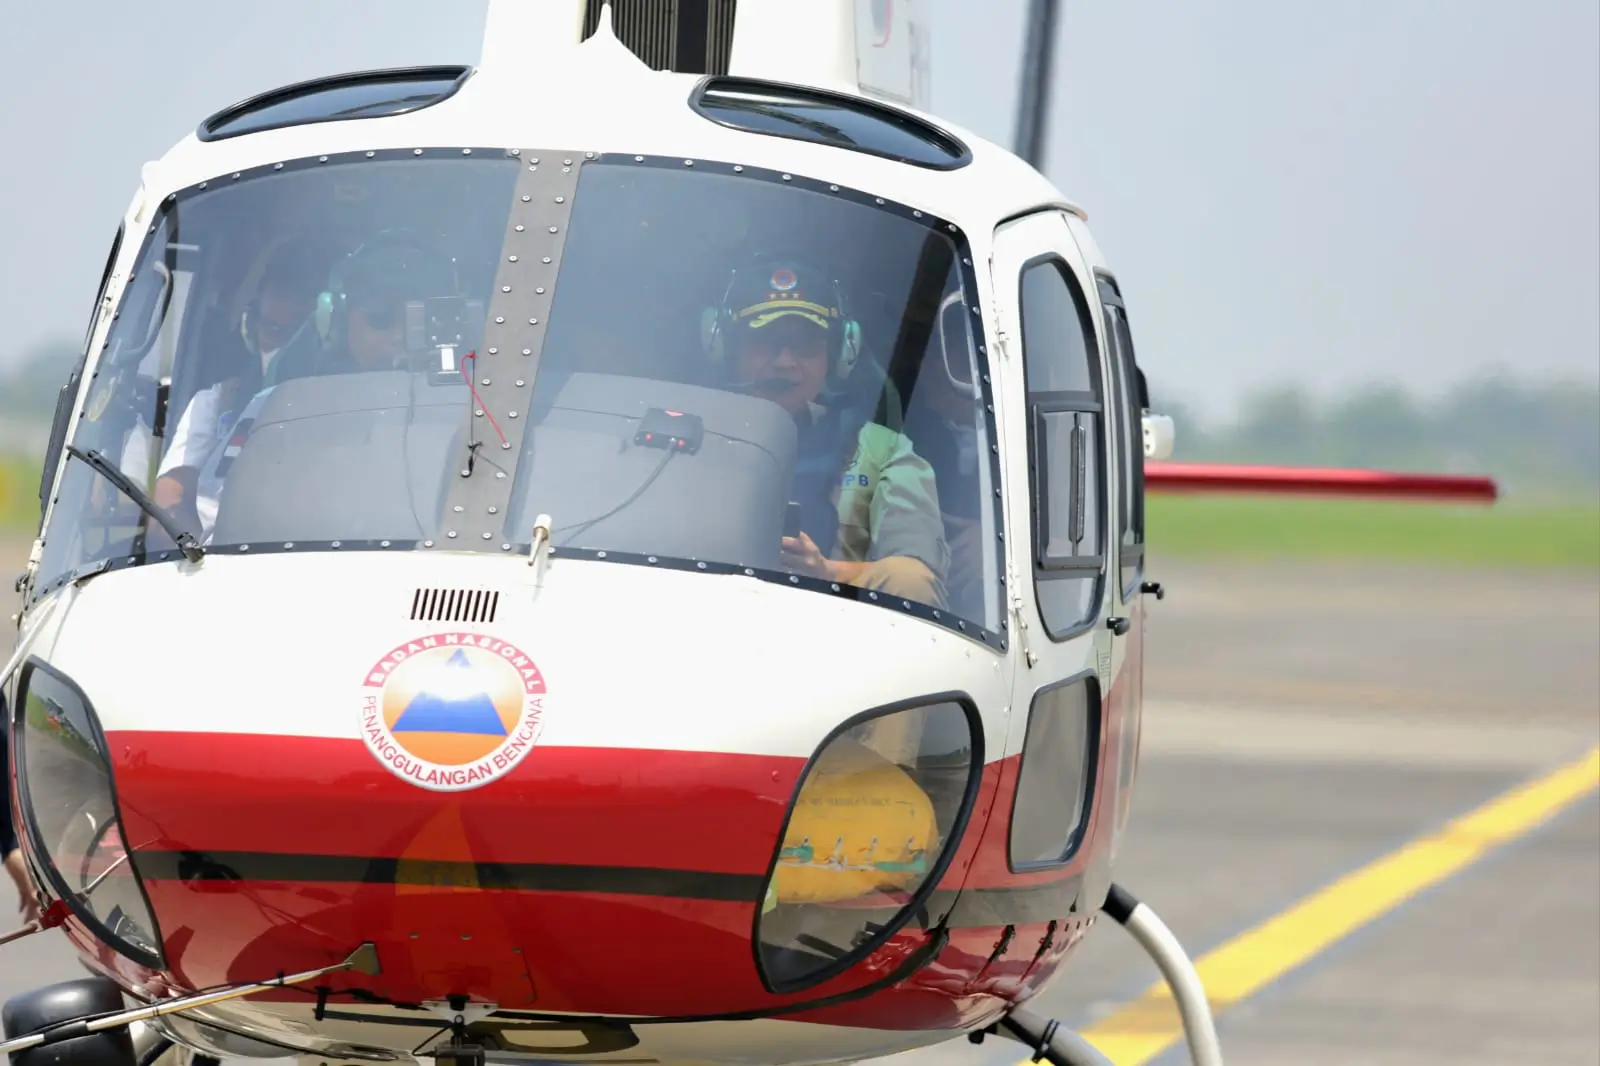 Kepala BNPB Letjen TNI Suharyanto, S. Sos., M.M. saat berada di Bandara Juanda untuk melakukan penerbangan menggunakan helikopter menuju lokasi terdampak gempa di Pulau Bawean, Kabupaten Gresik, Jawa Timur pada Minggu (24/3) siang.